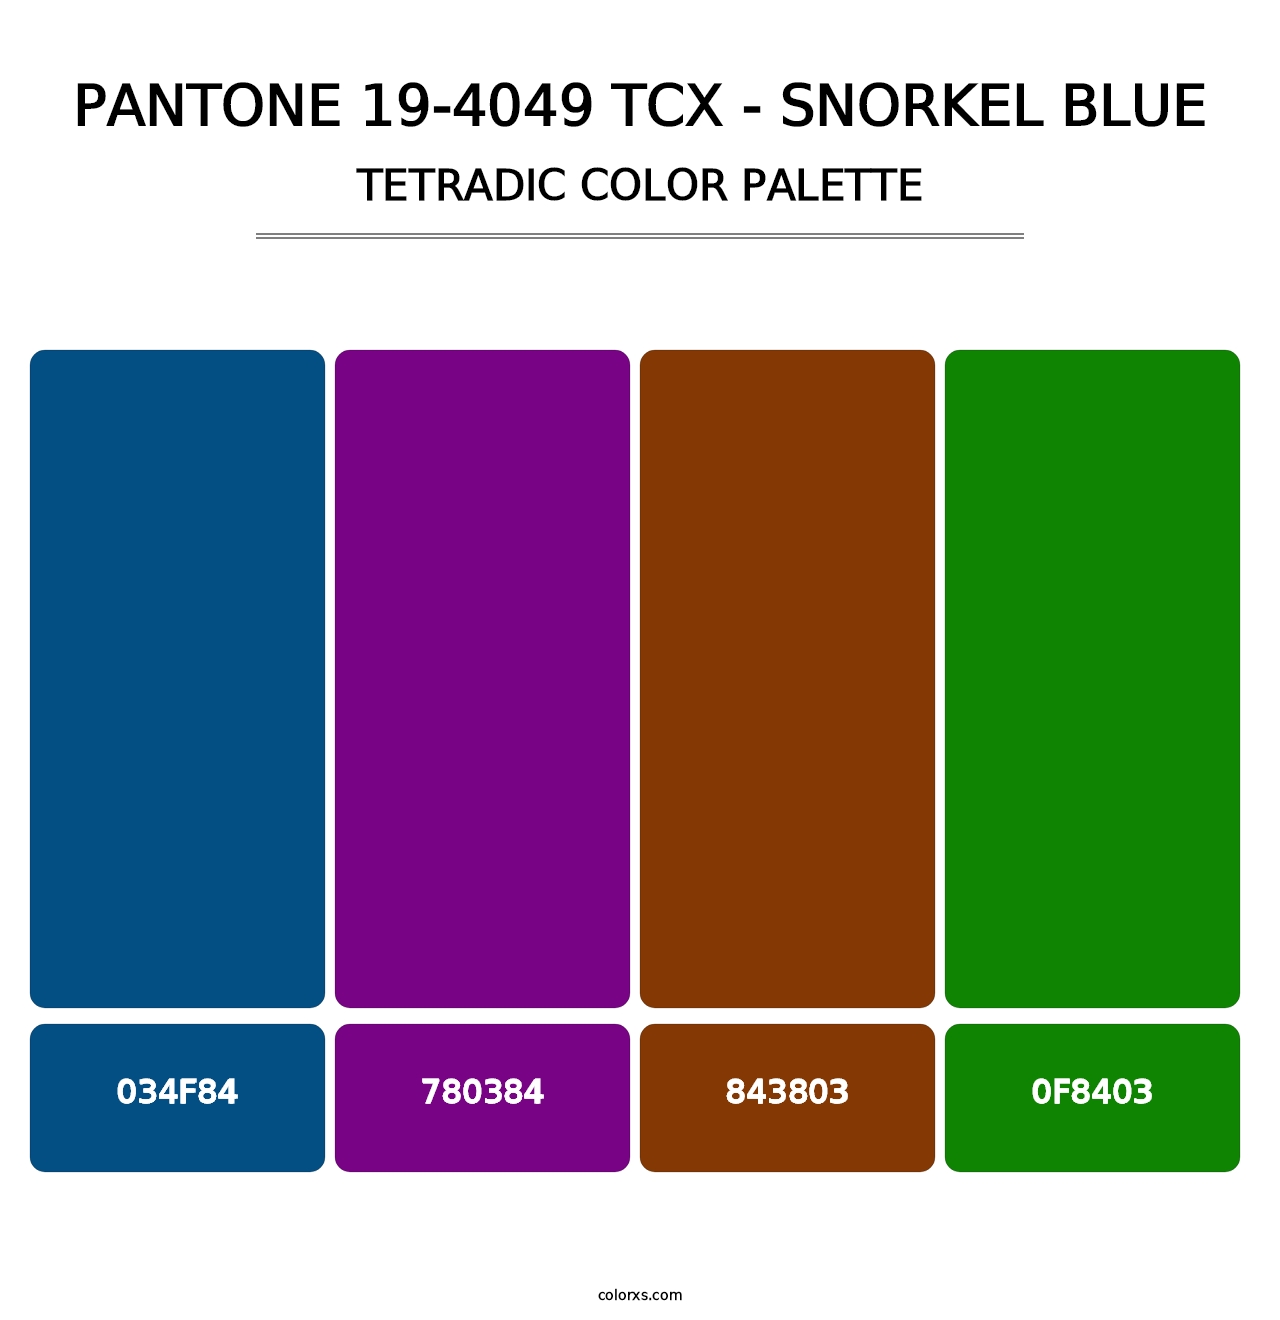 PANTONE 19-4049 TCX - Snorkel Blue - Tetradic Color Palette